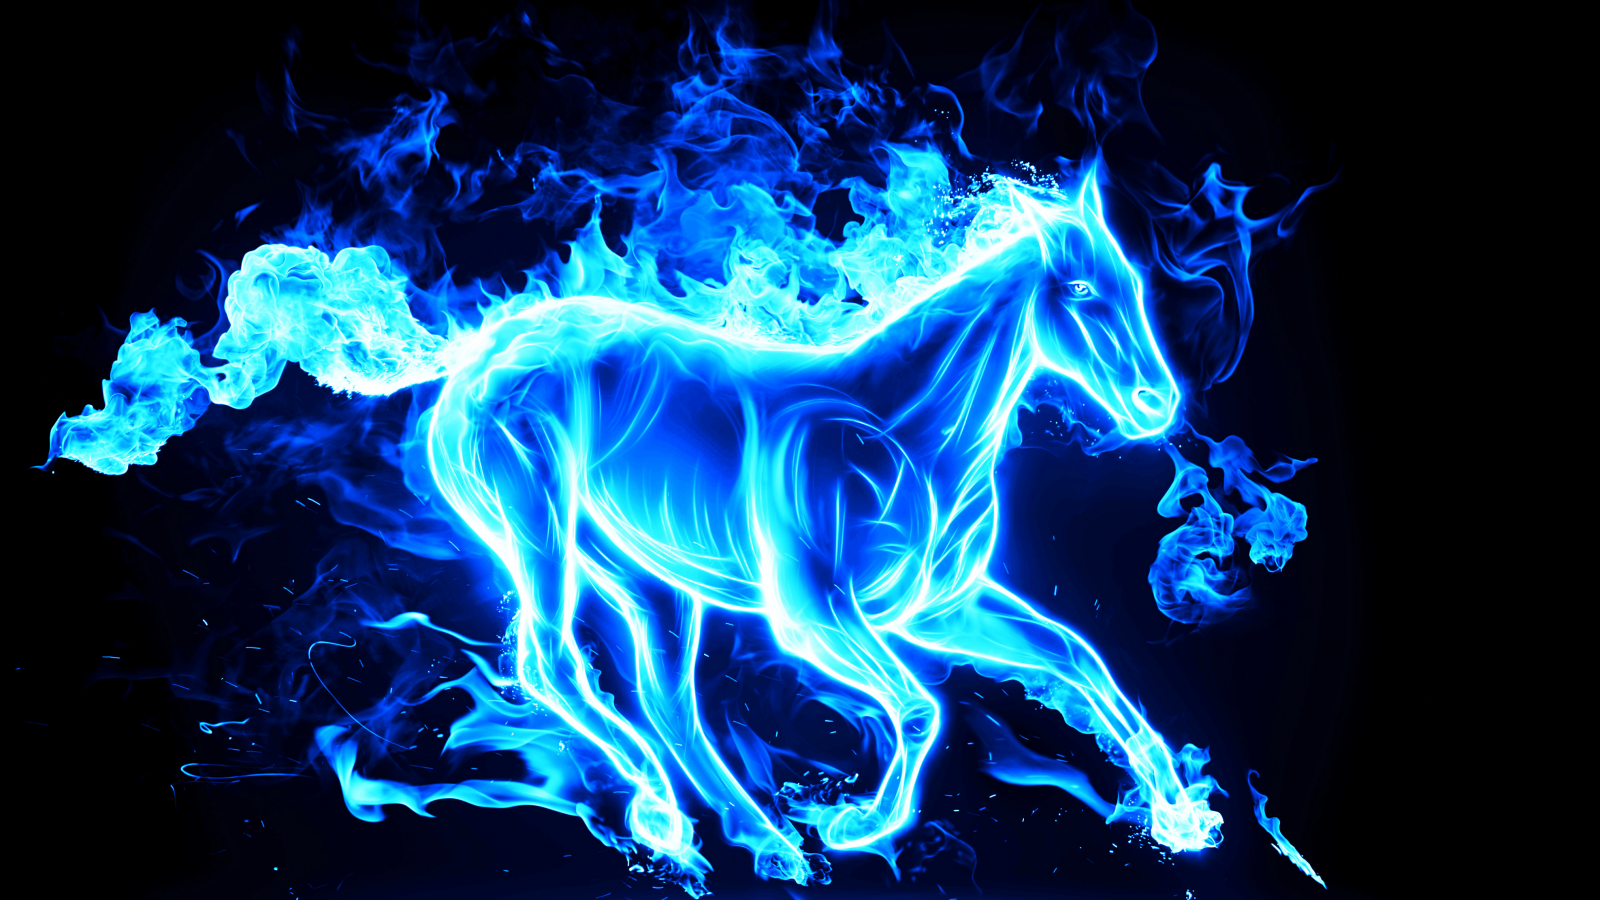 конь, new year, horse, с новым годом, лошадь, 2014, новый год